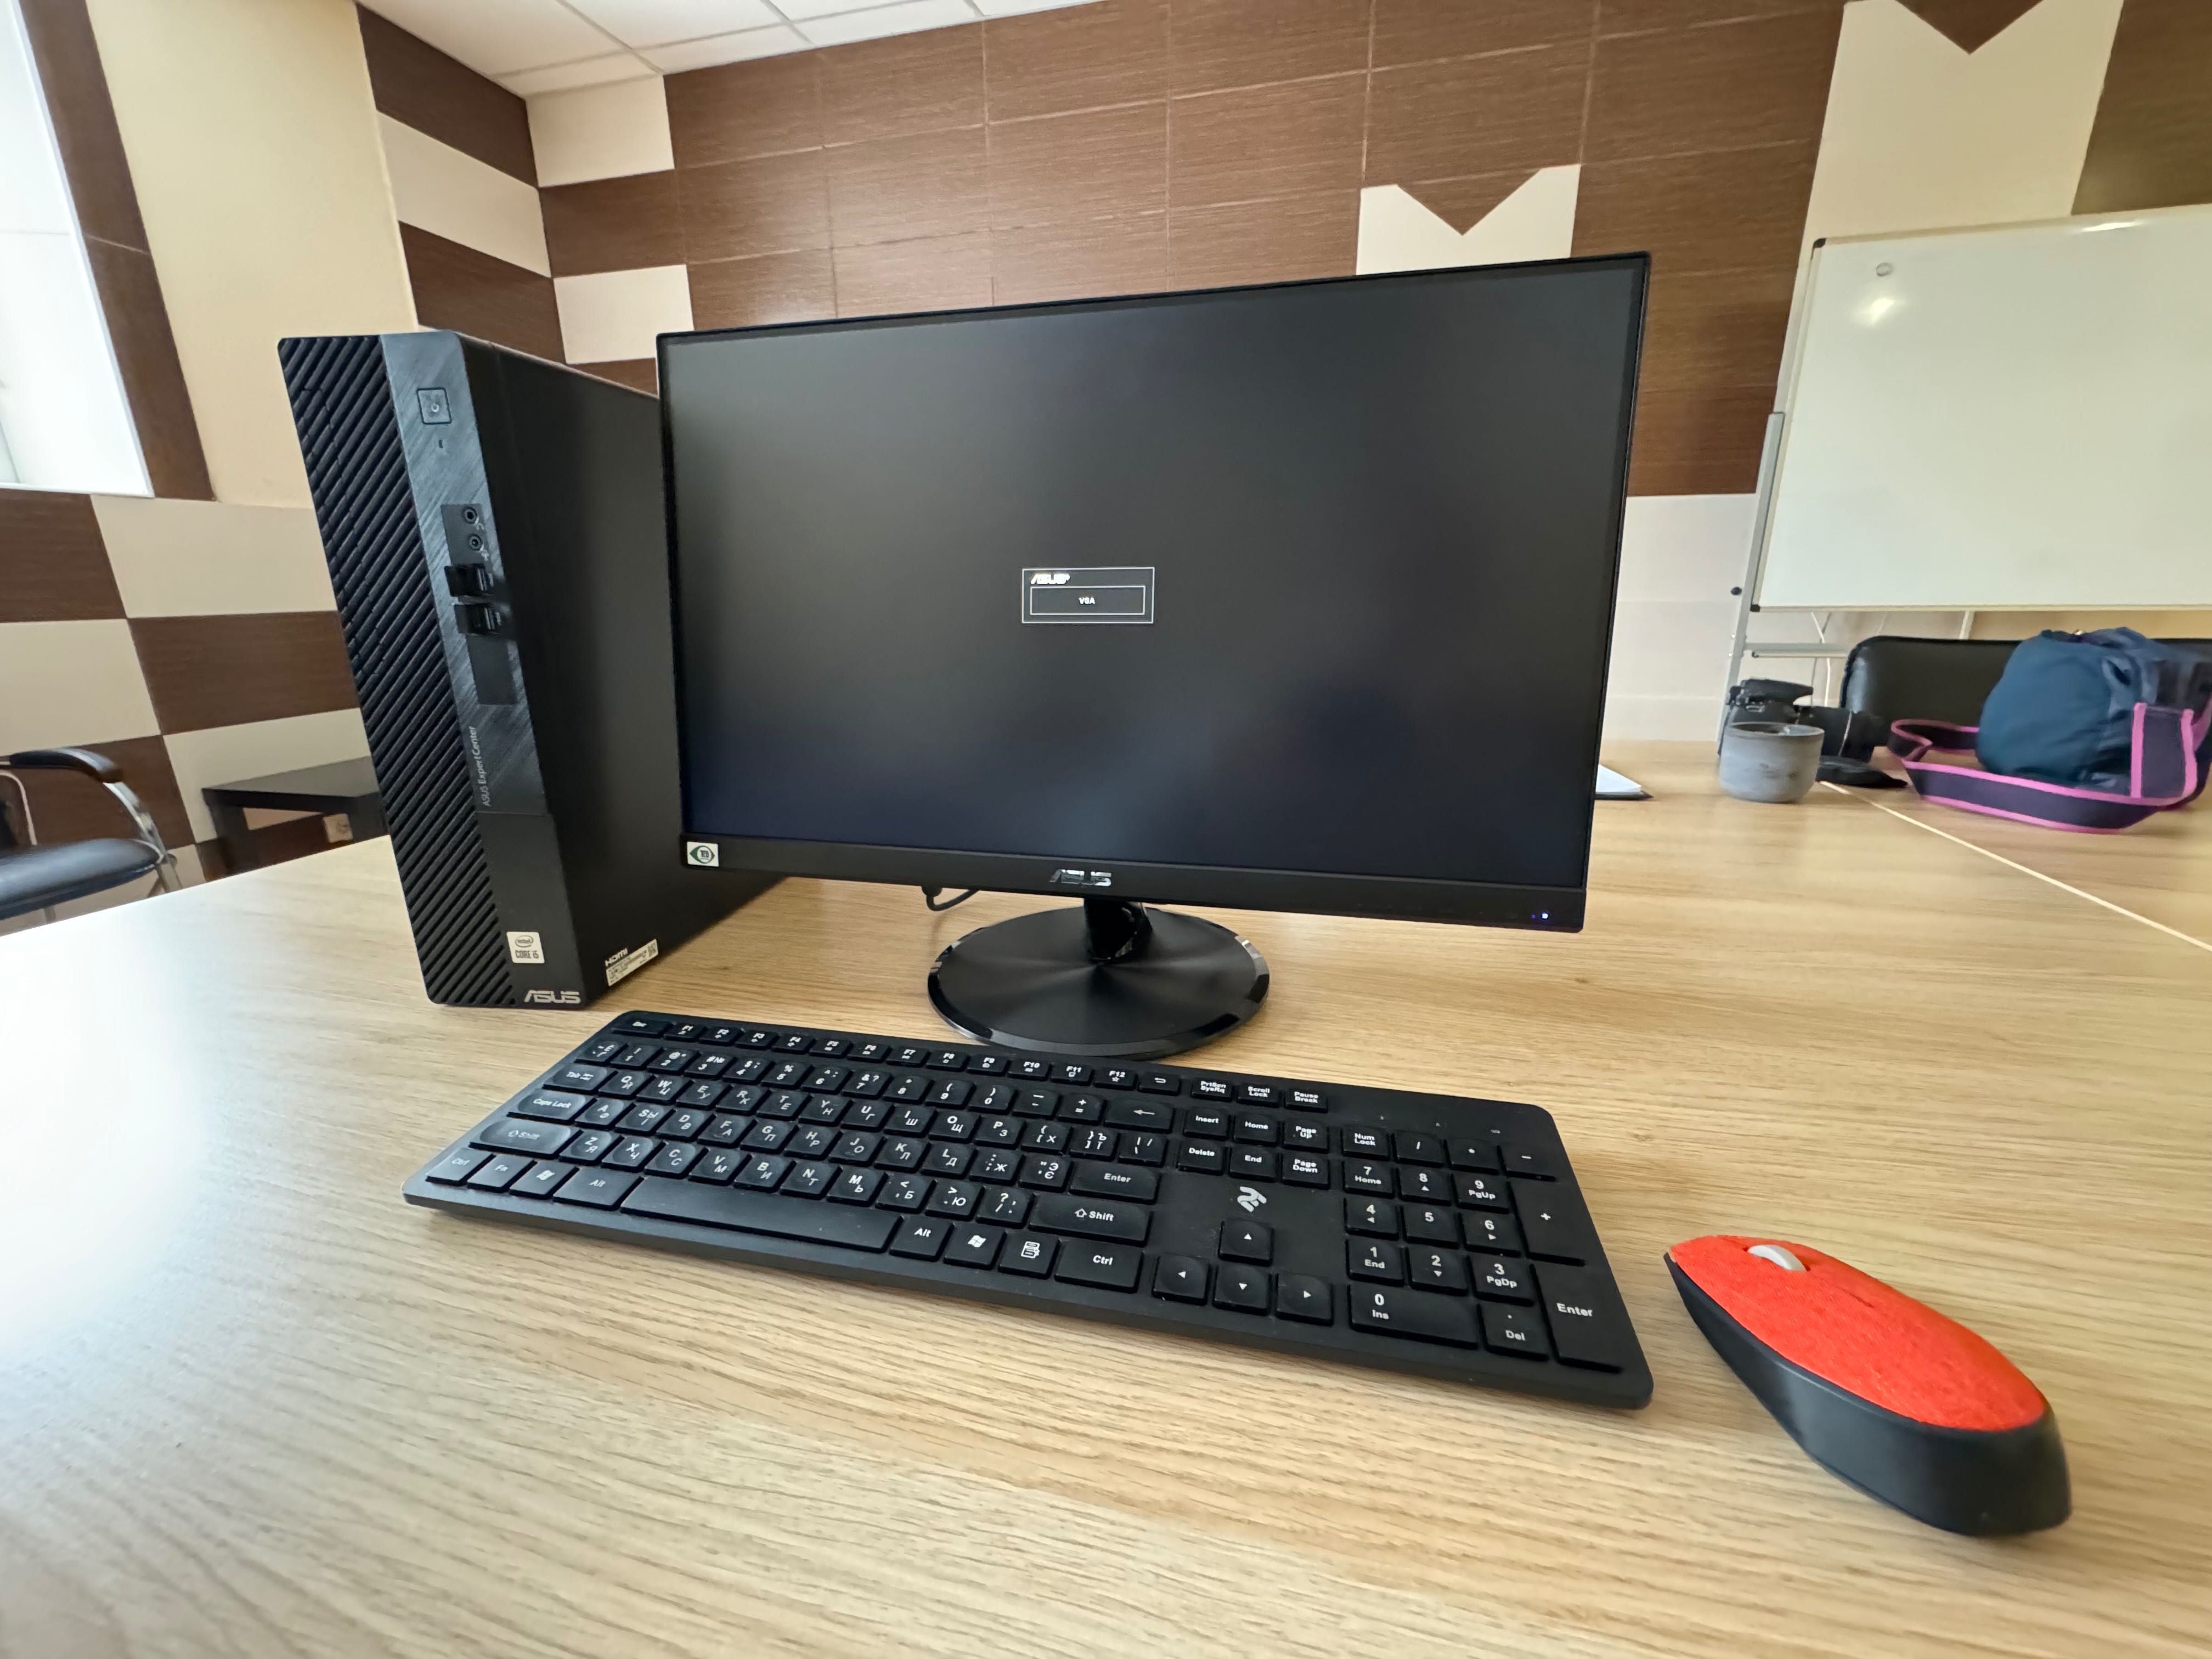 Новый Комплект Asus Компьютер и Монитор с Офицальним Windows 11.